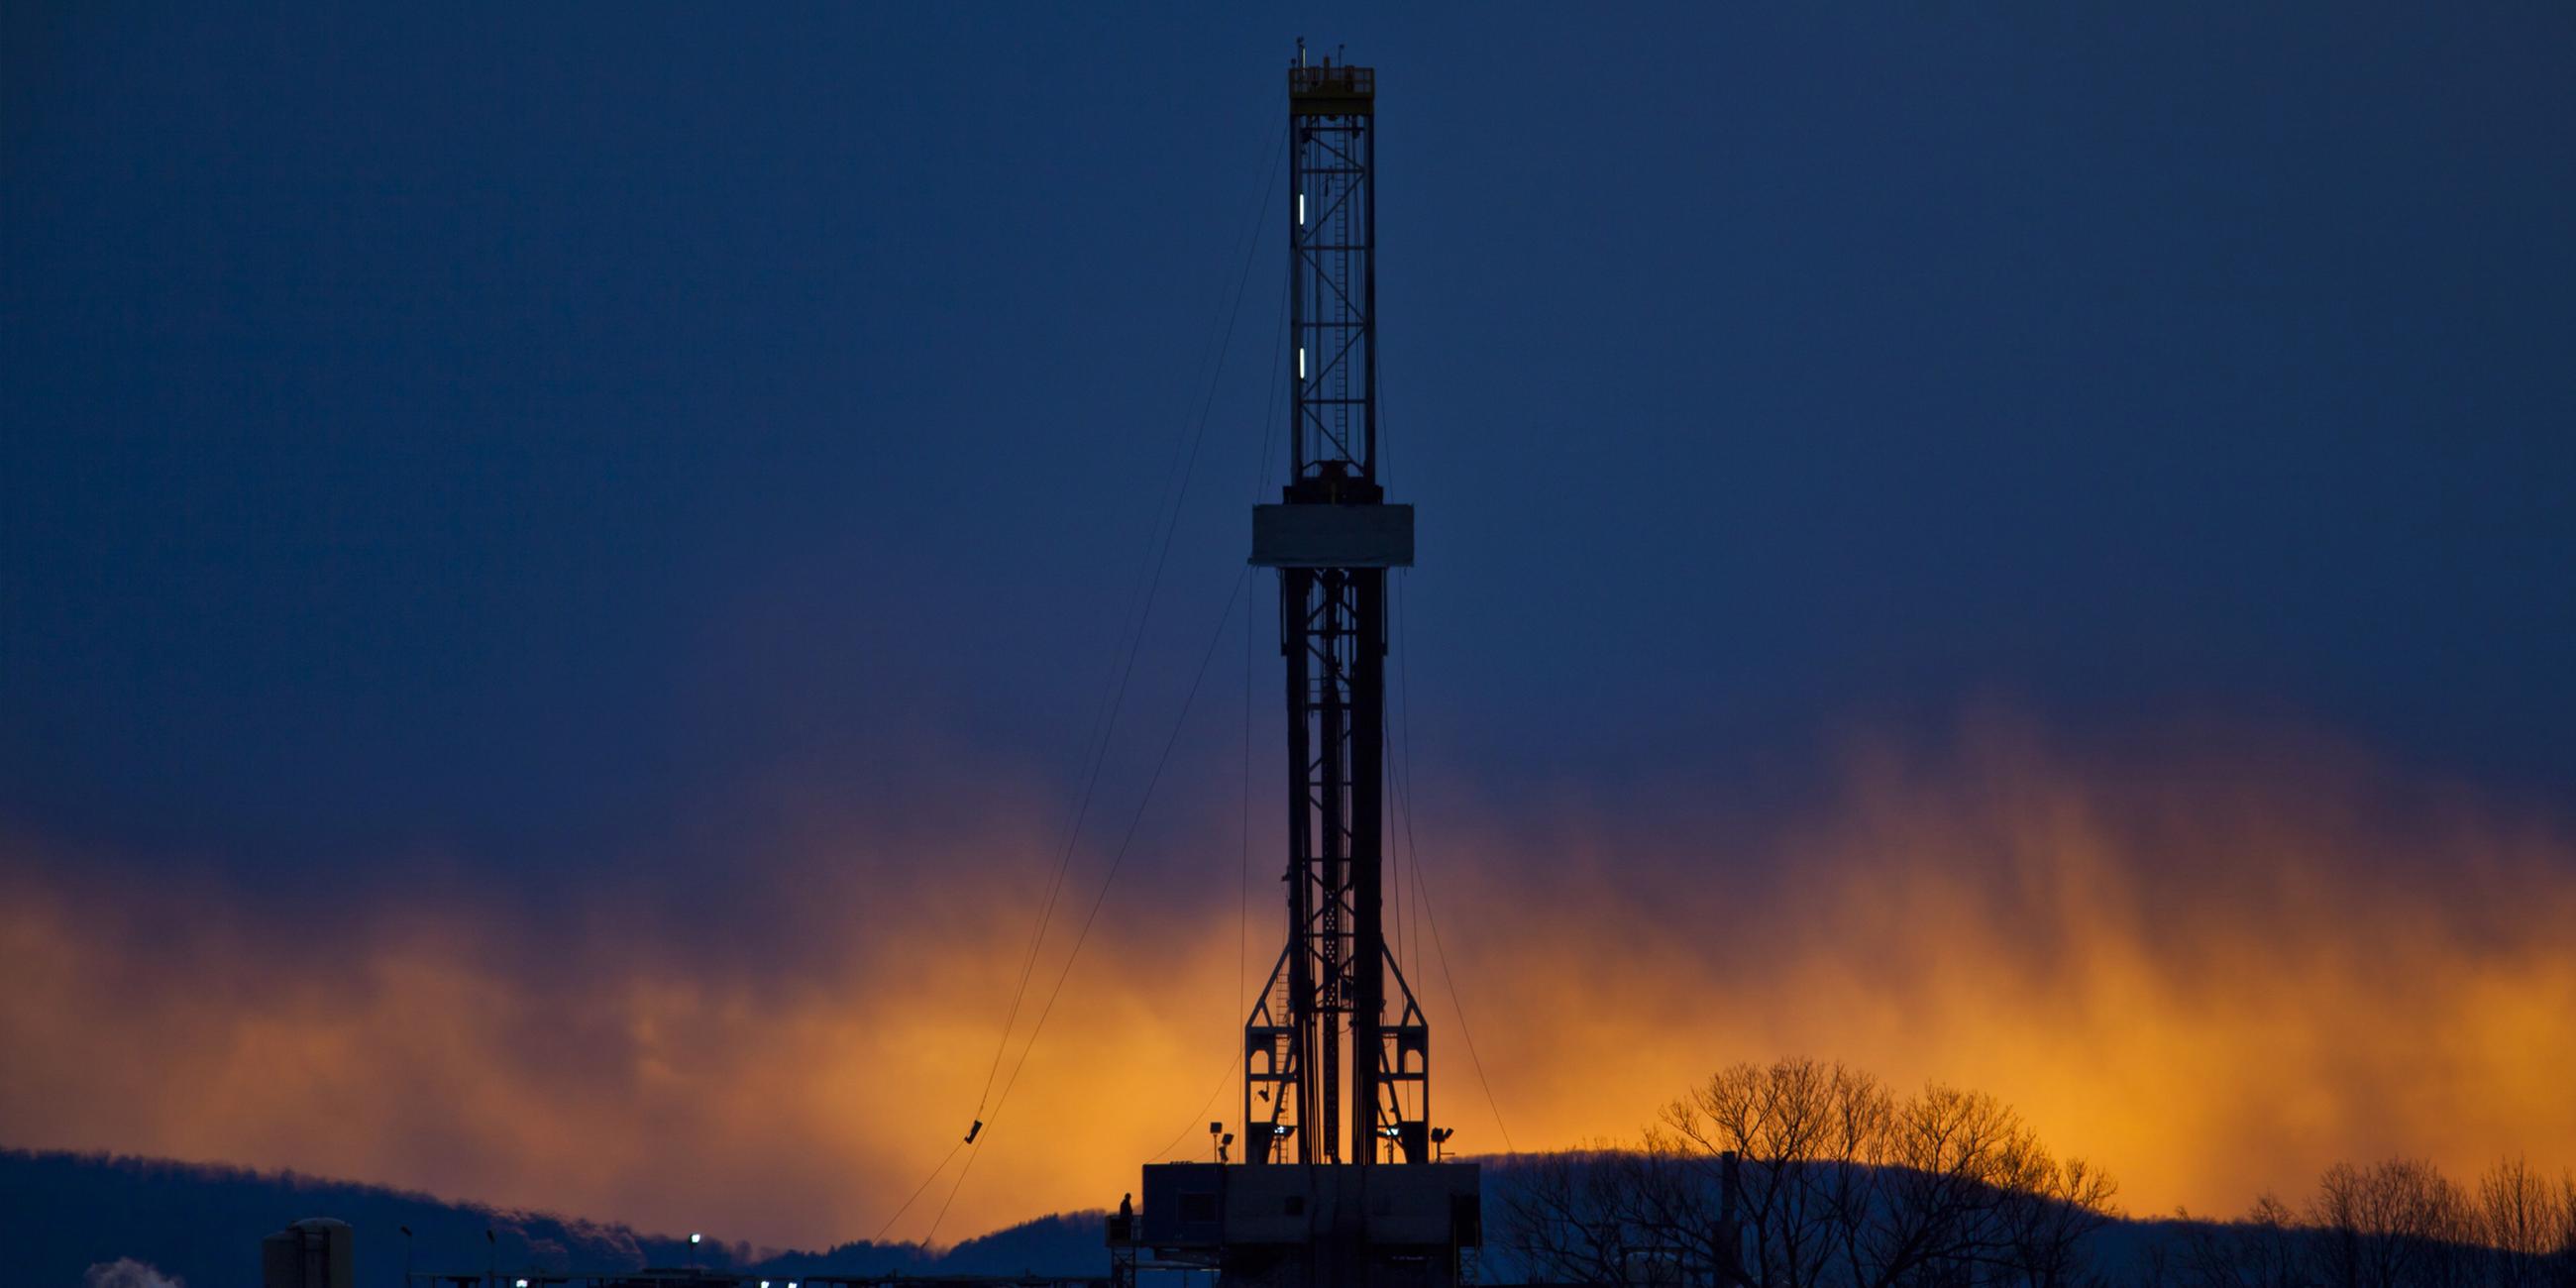  Der Bohrturm einer Ölförderplattform, die nach dem Prinzip des "Fracking" arbeitet ist als Sillhouette zu sehen. 